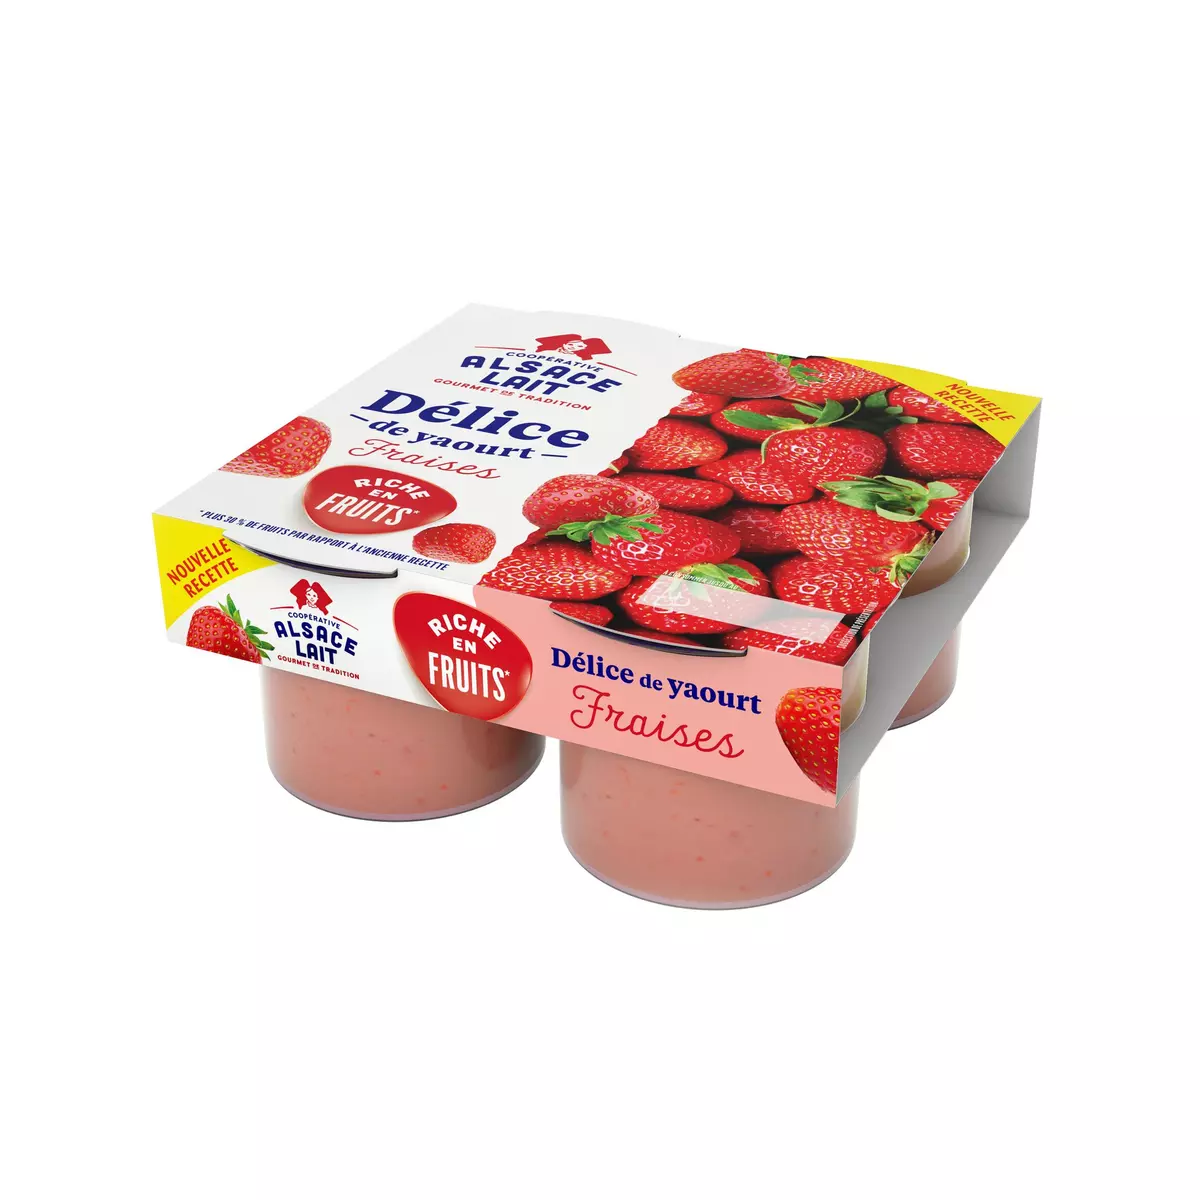 ALSACE LAIT Délice de yaourt aux fraises 4x125g